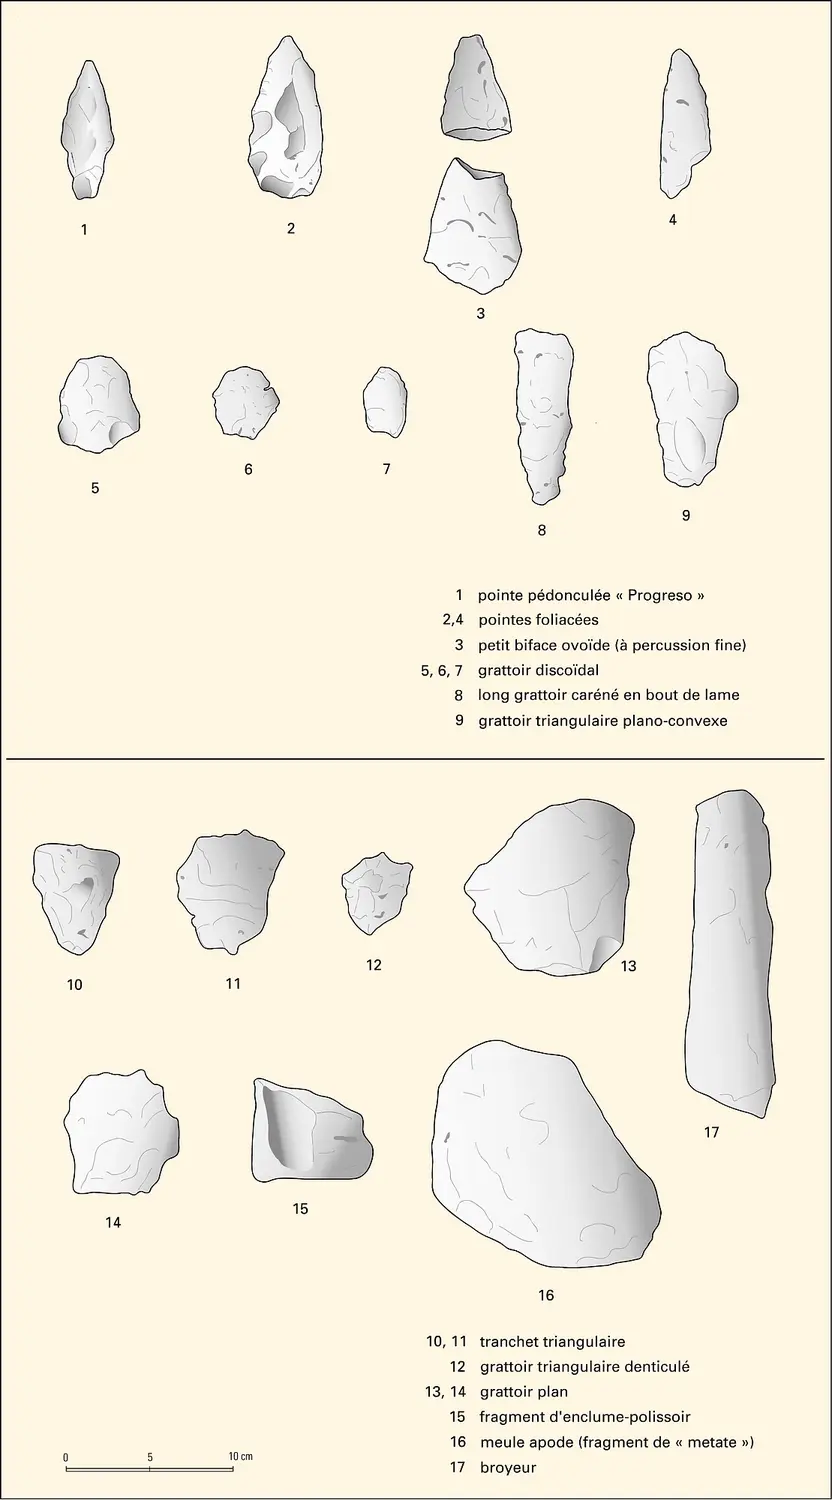 Outils de pierre taillée du site de Progreso (Belize)